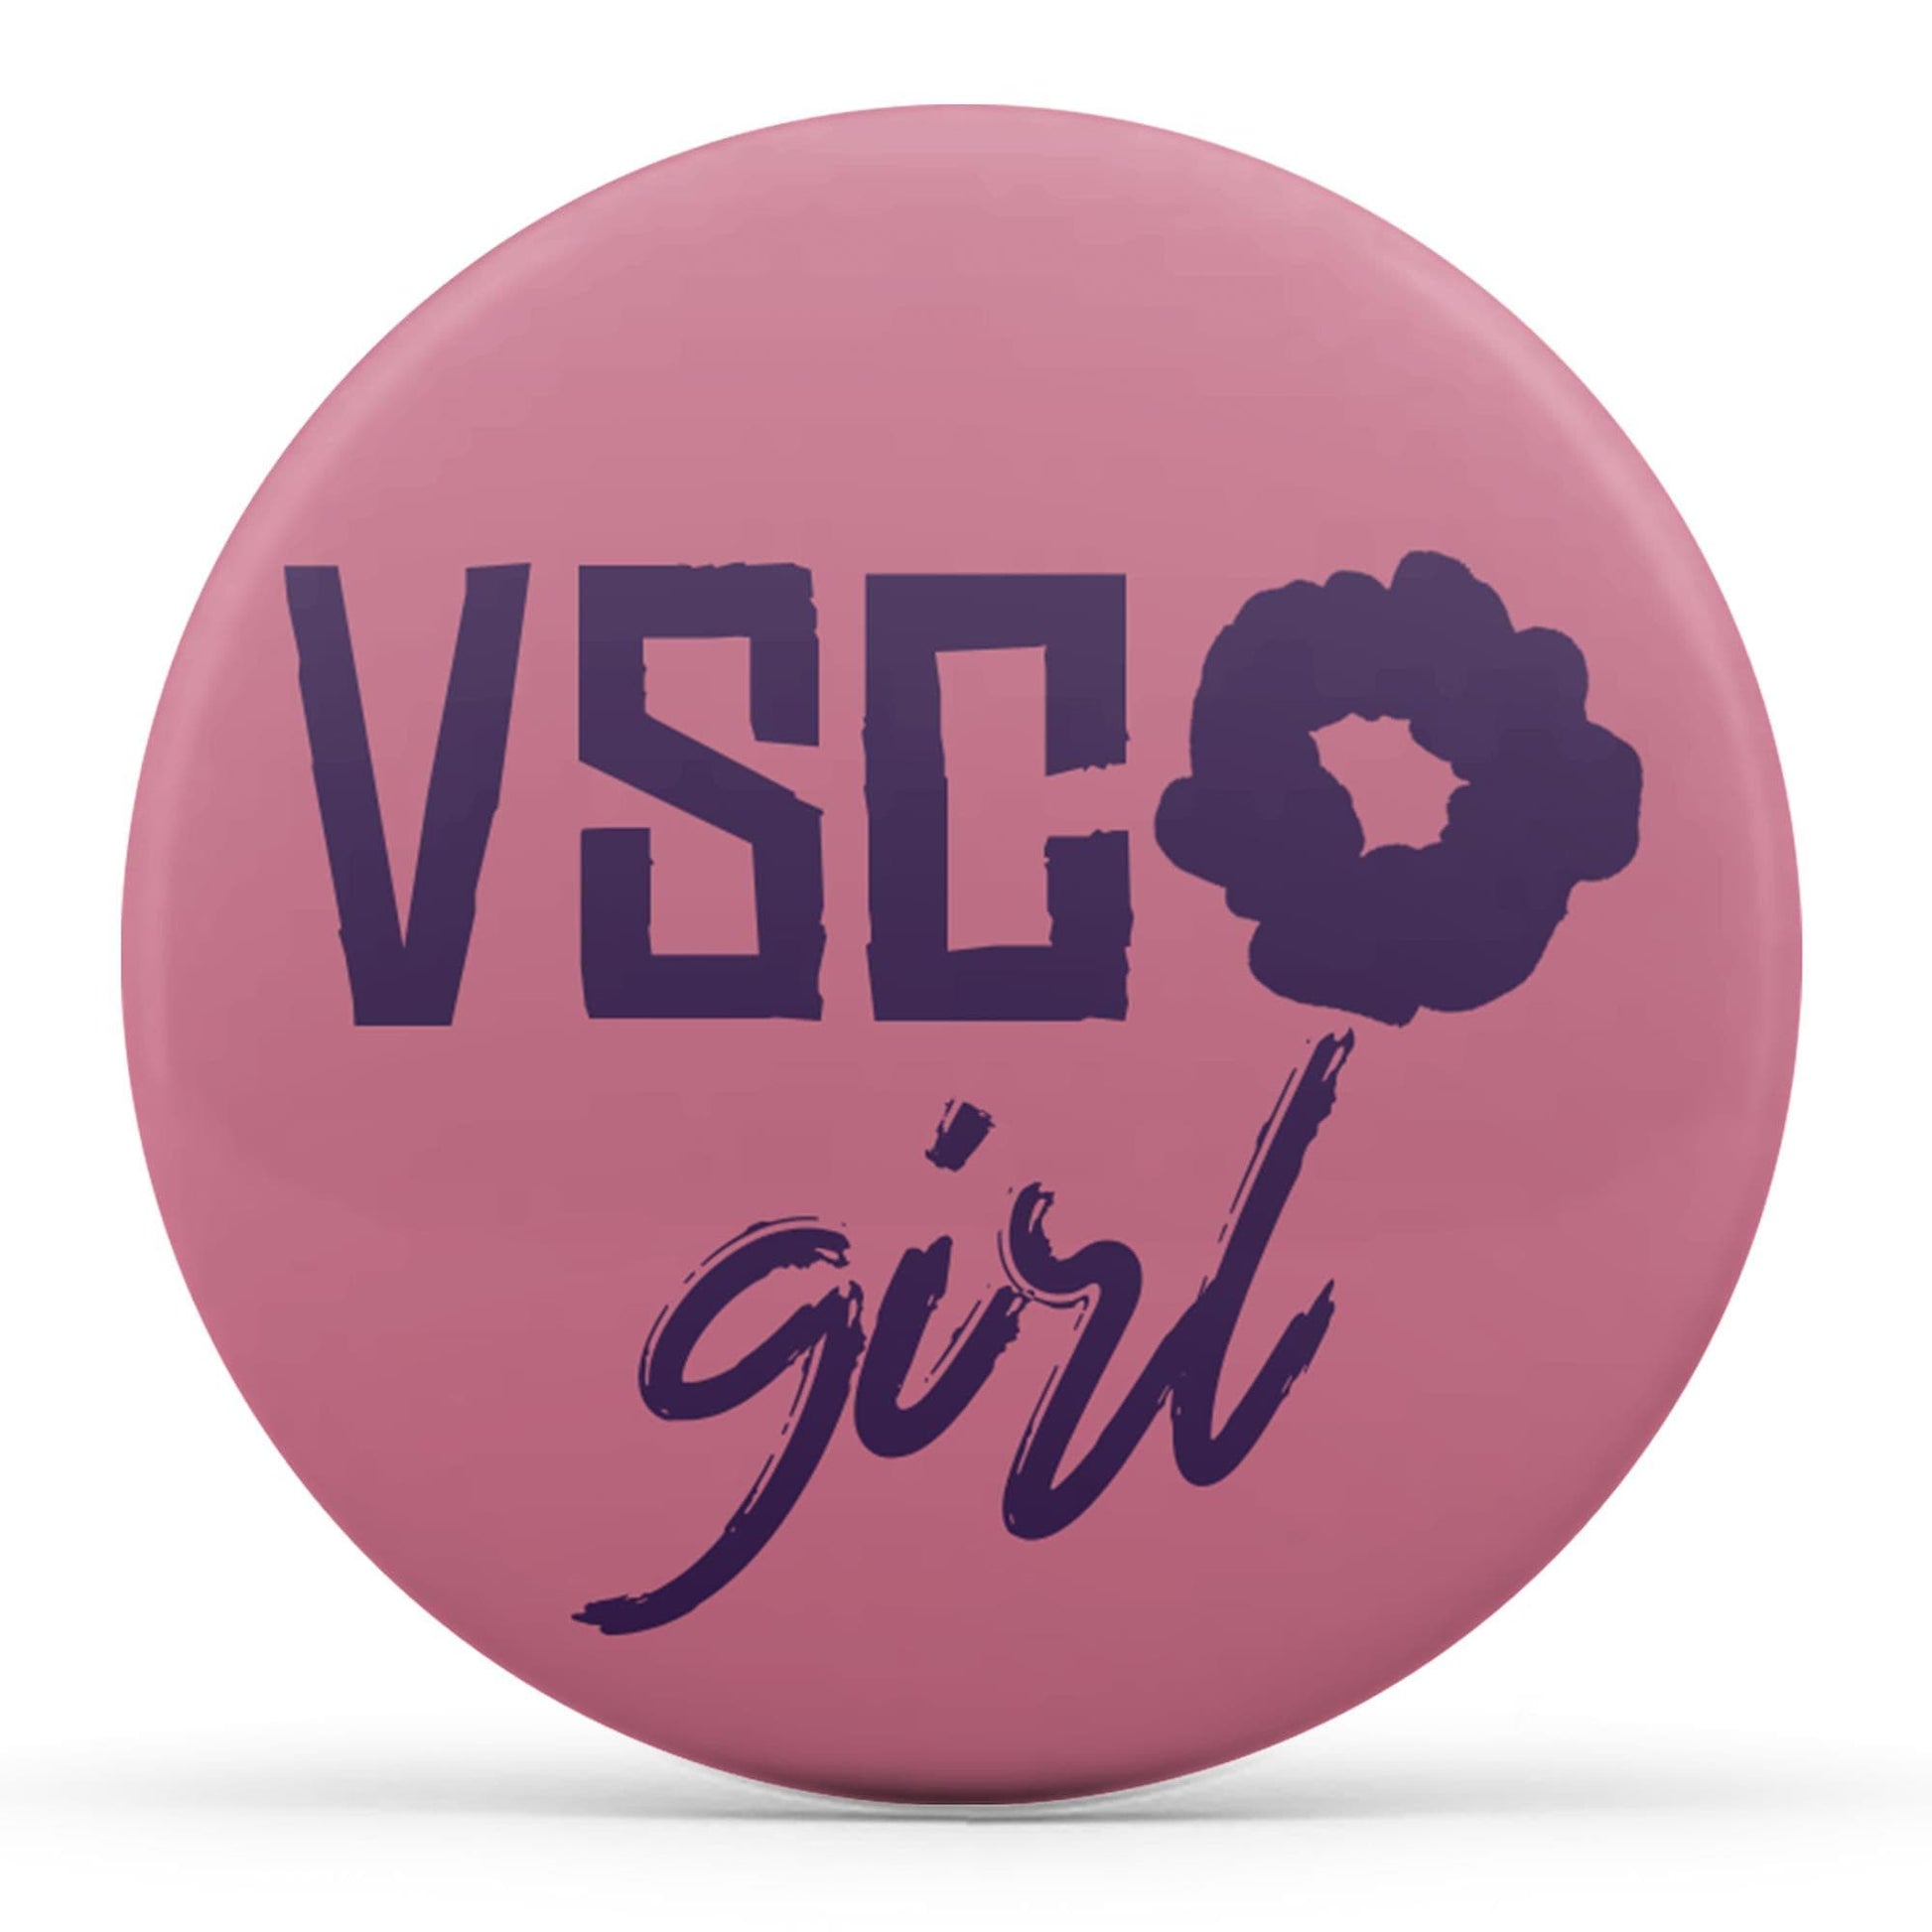 VSCO Girl Image